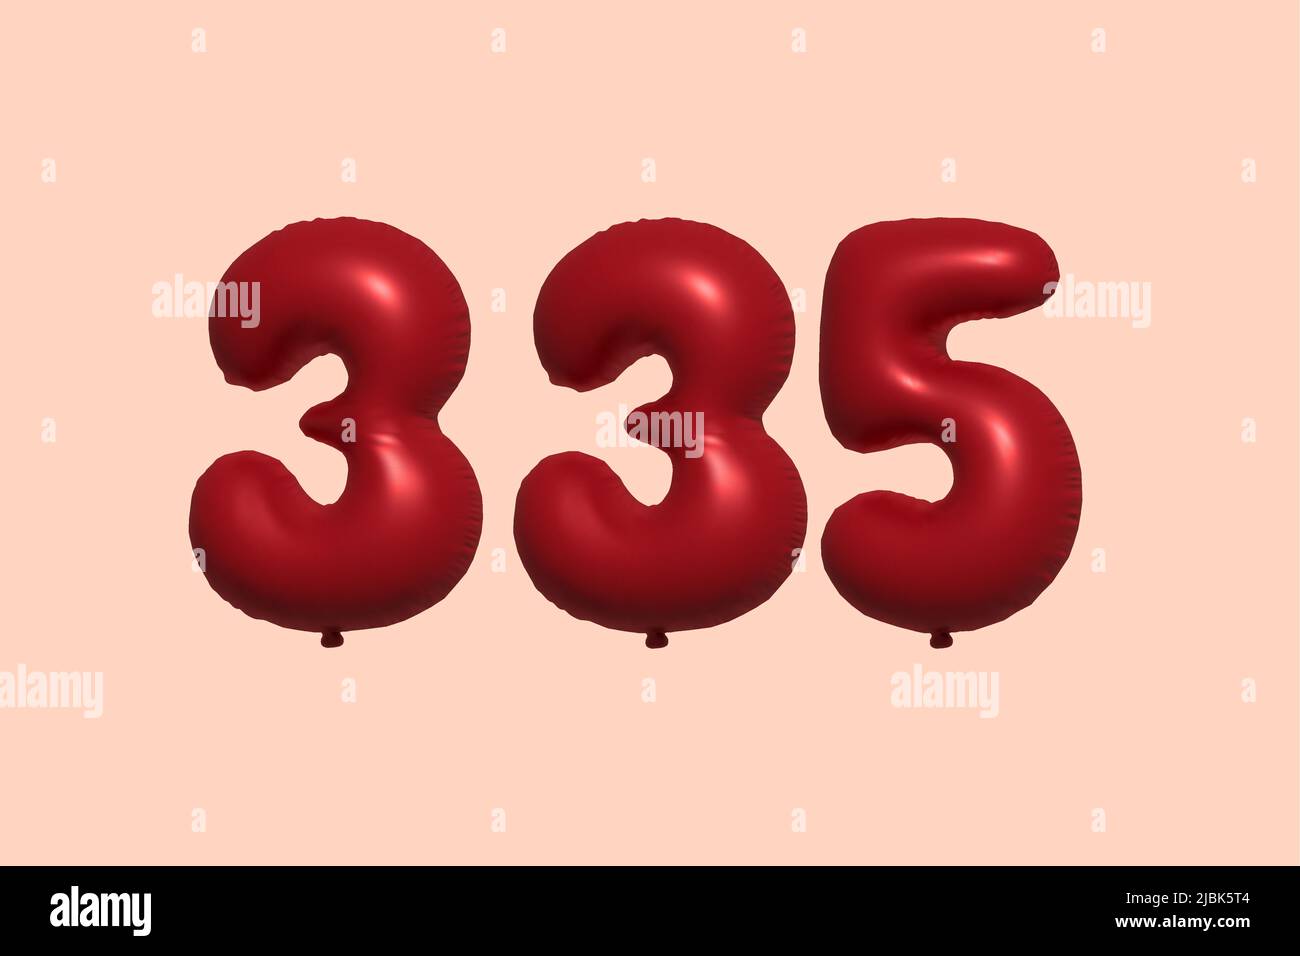 palloncino in numero 335 3d realizzato con rendering realistico di palloncino in aria metallica 3d. 3D palloncini di elio rosso per la vendita decorazione Party compleanno, celebrare anniversario, Vacanza nuziale. Illustrazione vettoriale Illustrazione Vettoriale